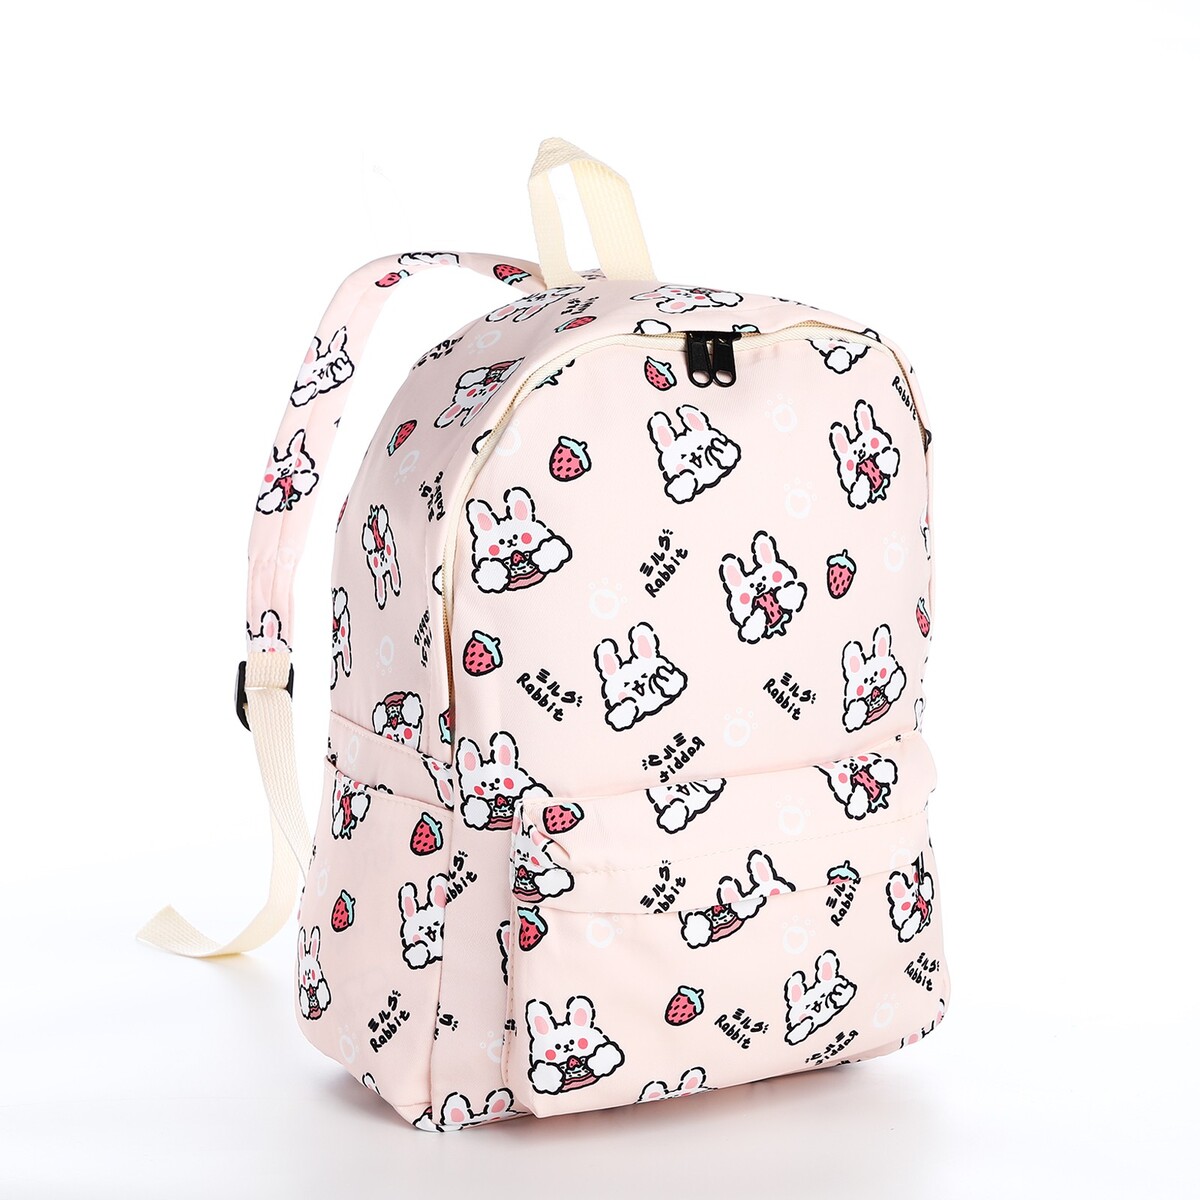 Рюкзак школьный из текстиля на молнии, 3 кармана, цвет бежевый/розовый рюкзак на молнии 3 наружных кармана бежевый зеленый